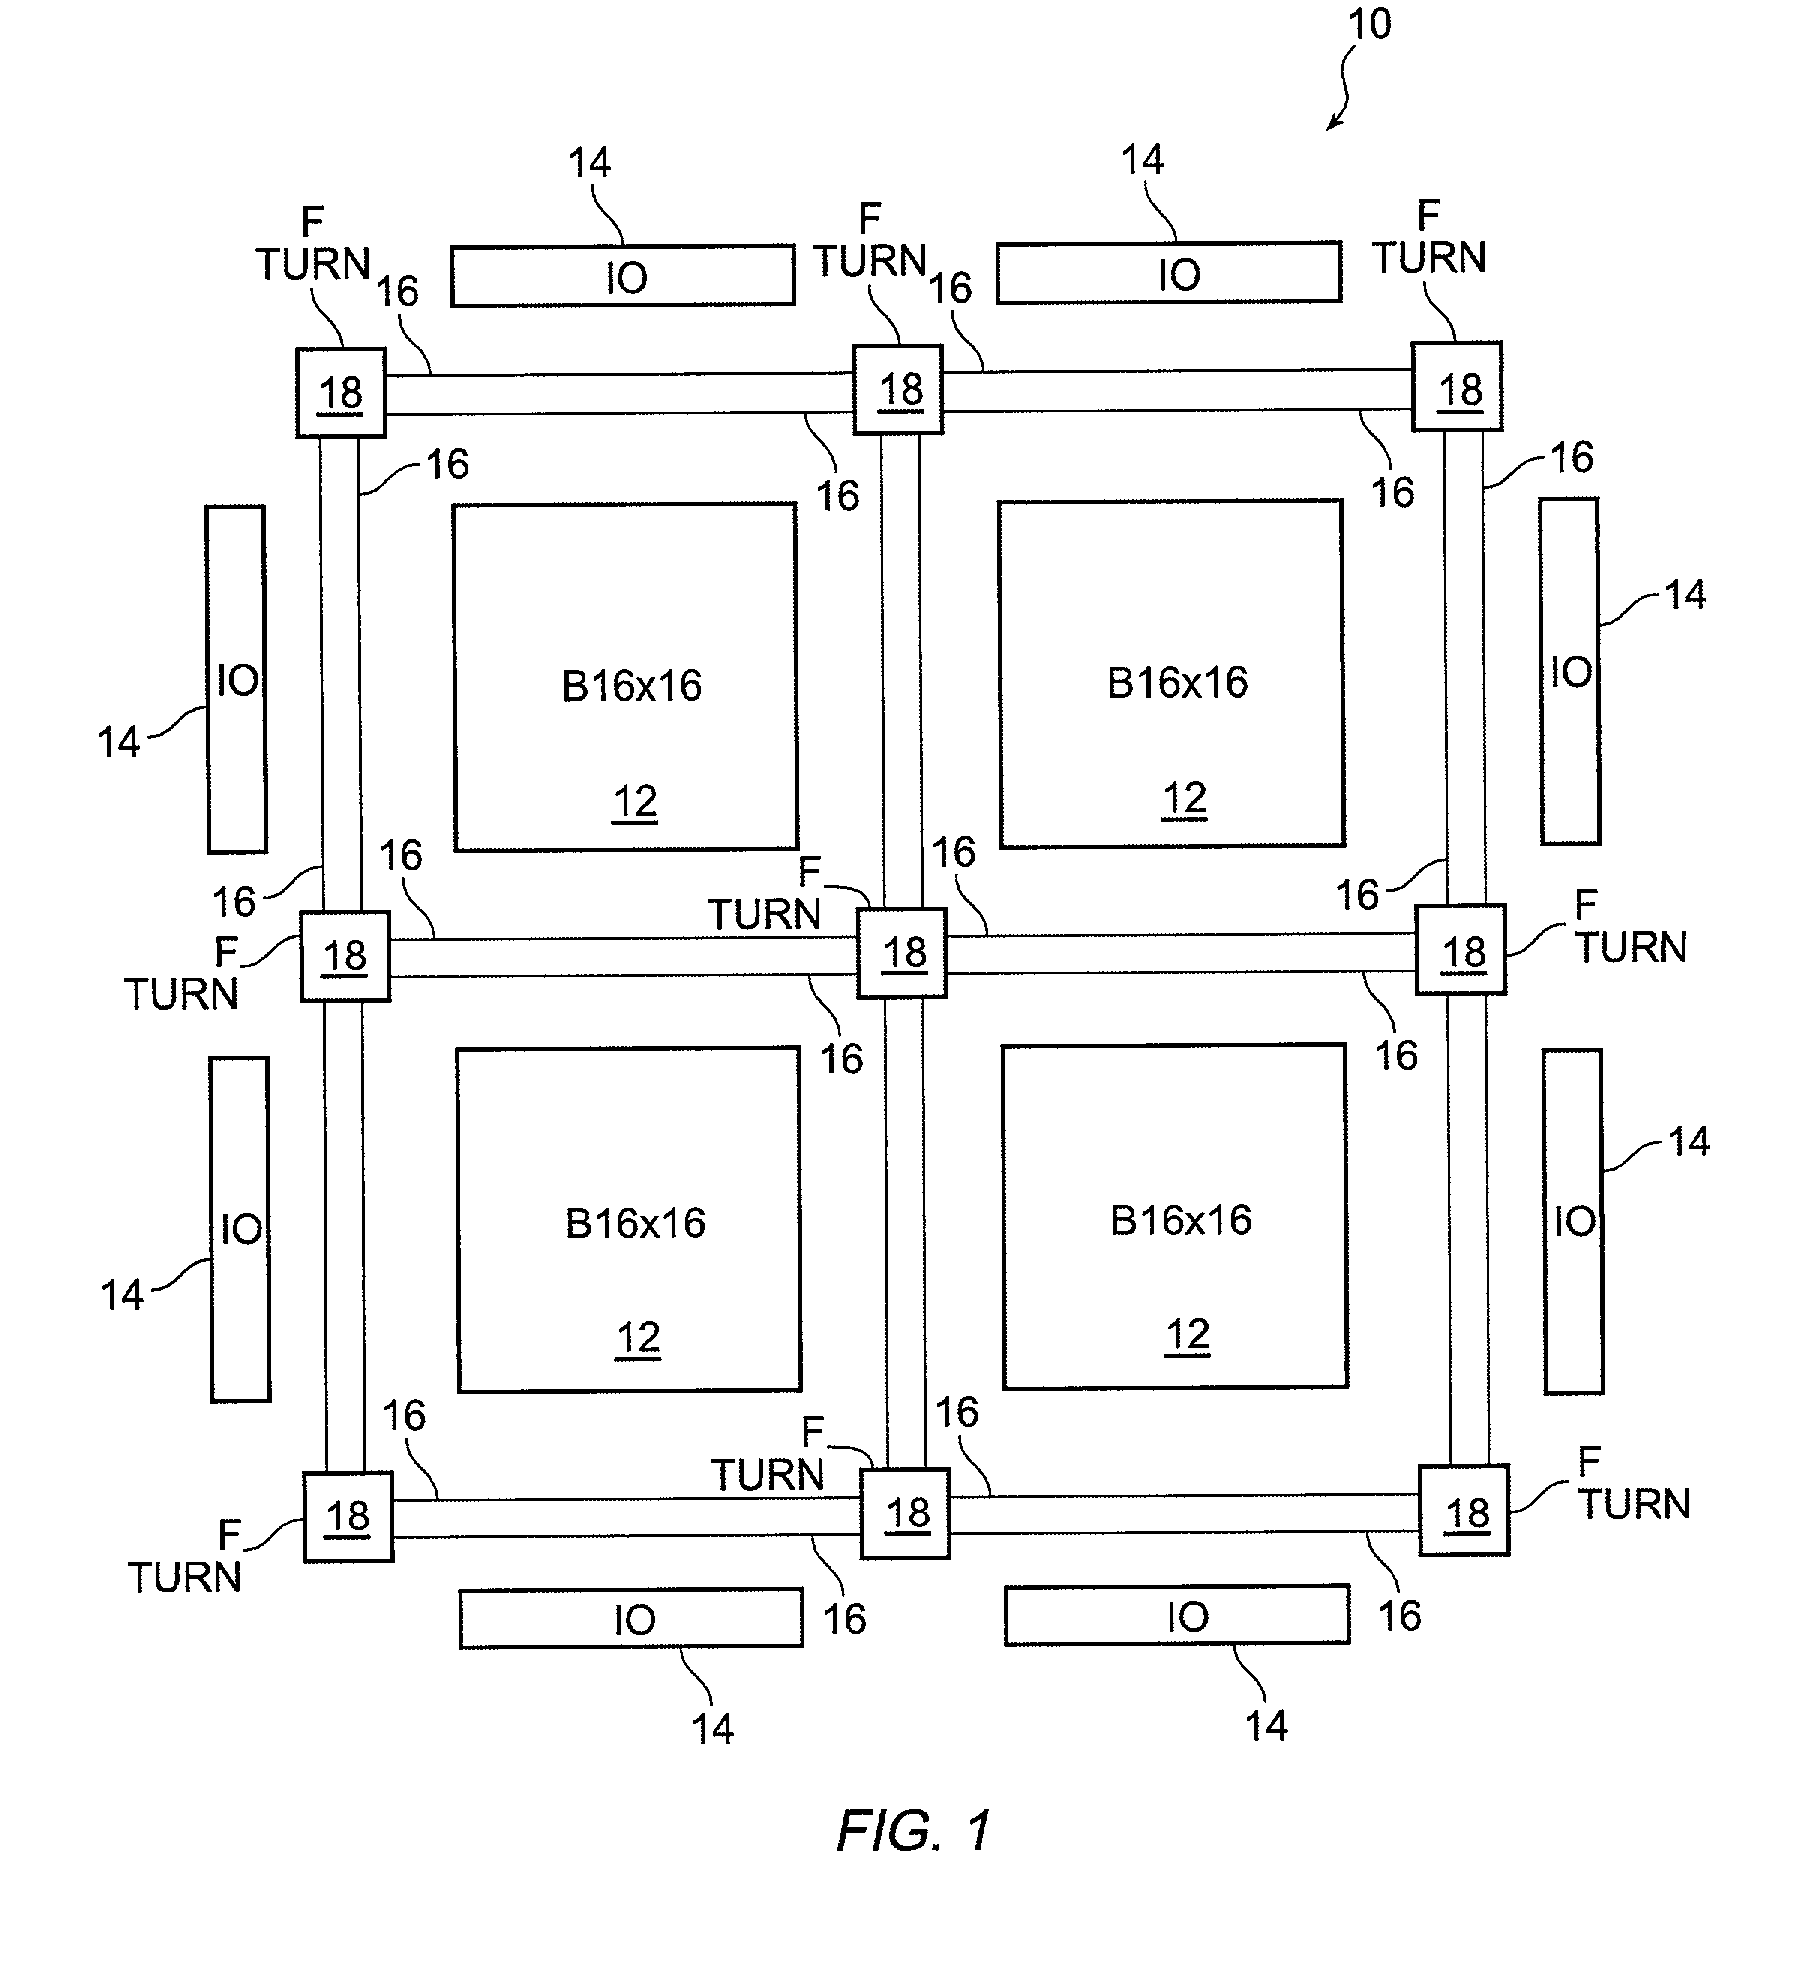 Block connector splitting in logic block of a field programmable gate array